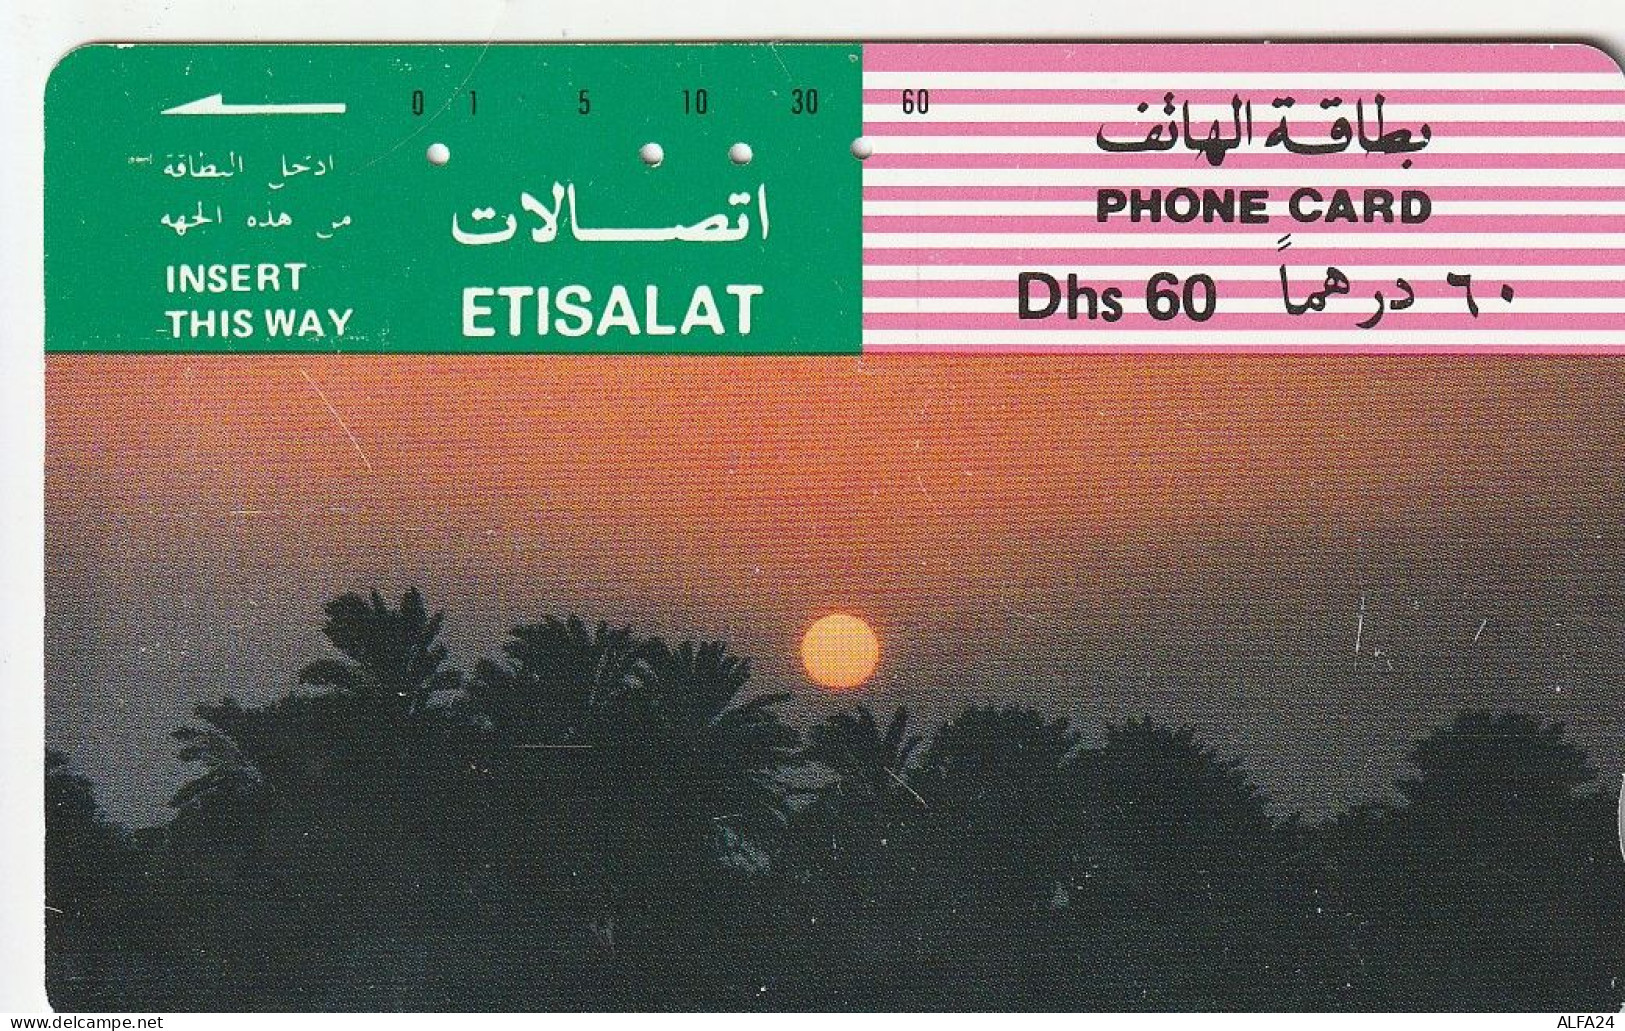 PHONE CARD EMIRATI ARABI  (E23.21.2 - Ver. Arab. Emirate